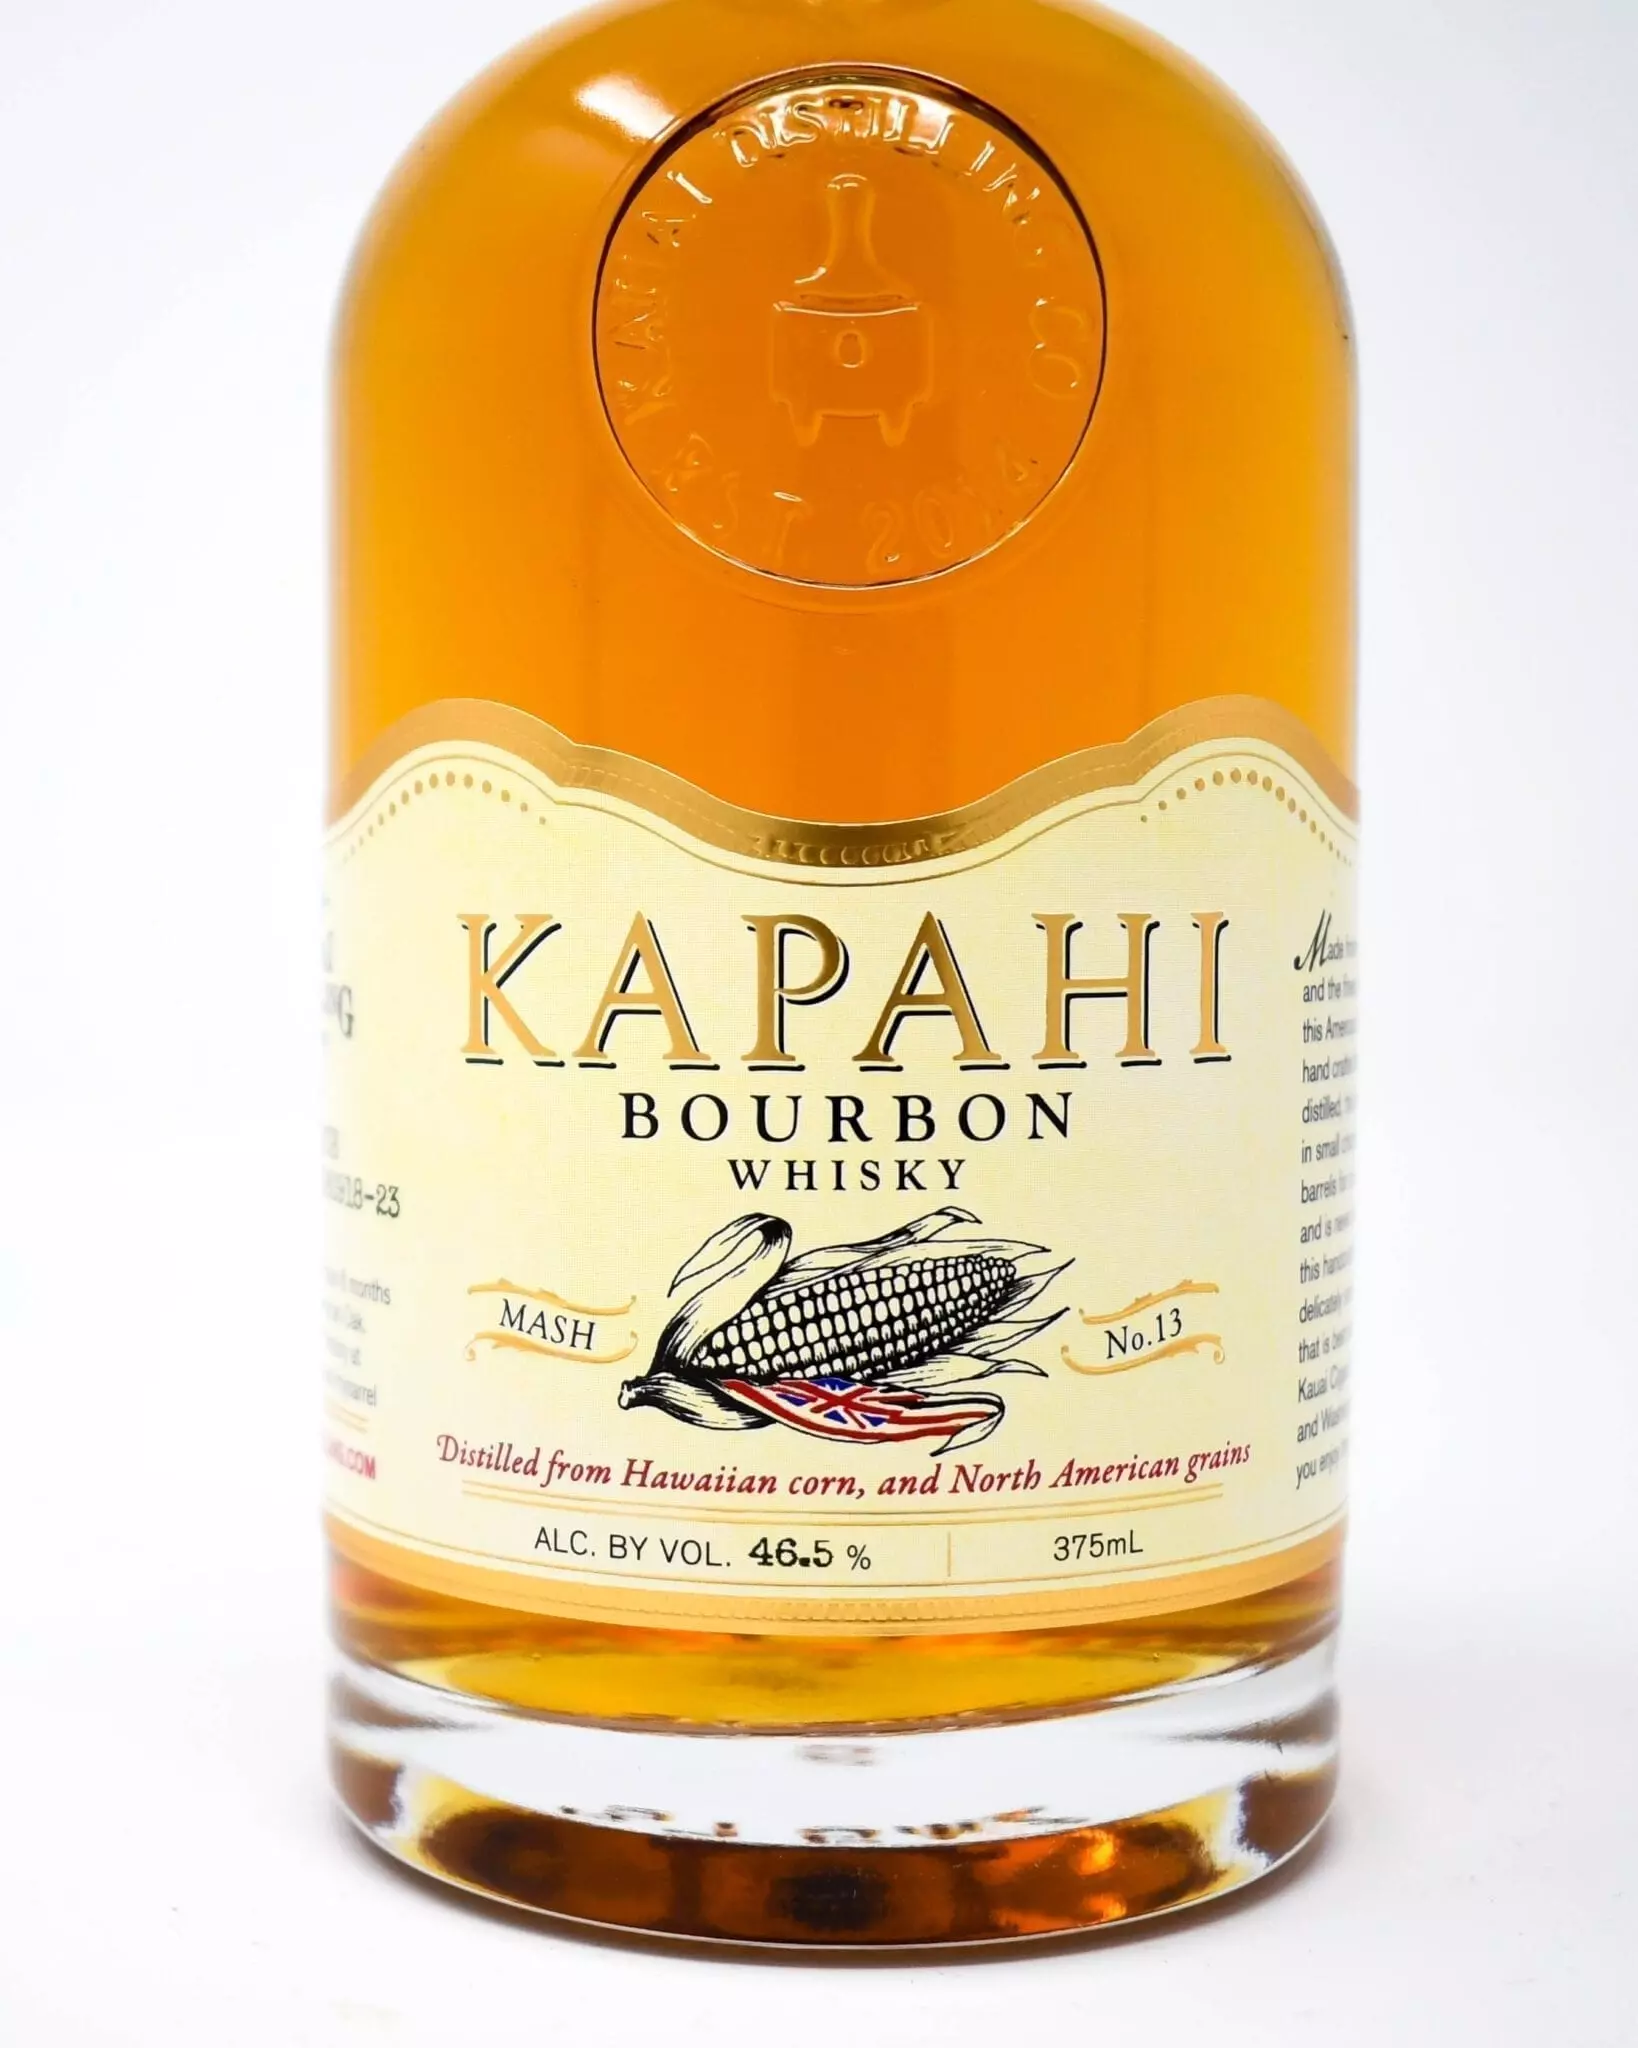 Kapahi Bourbon 375ml made with Kauai corn